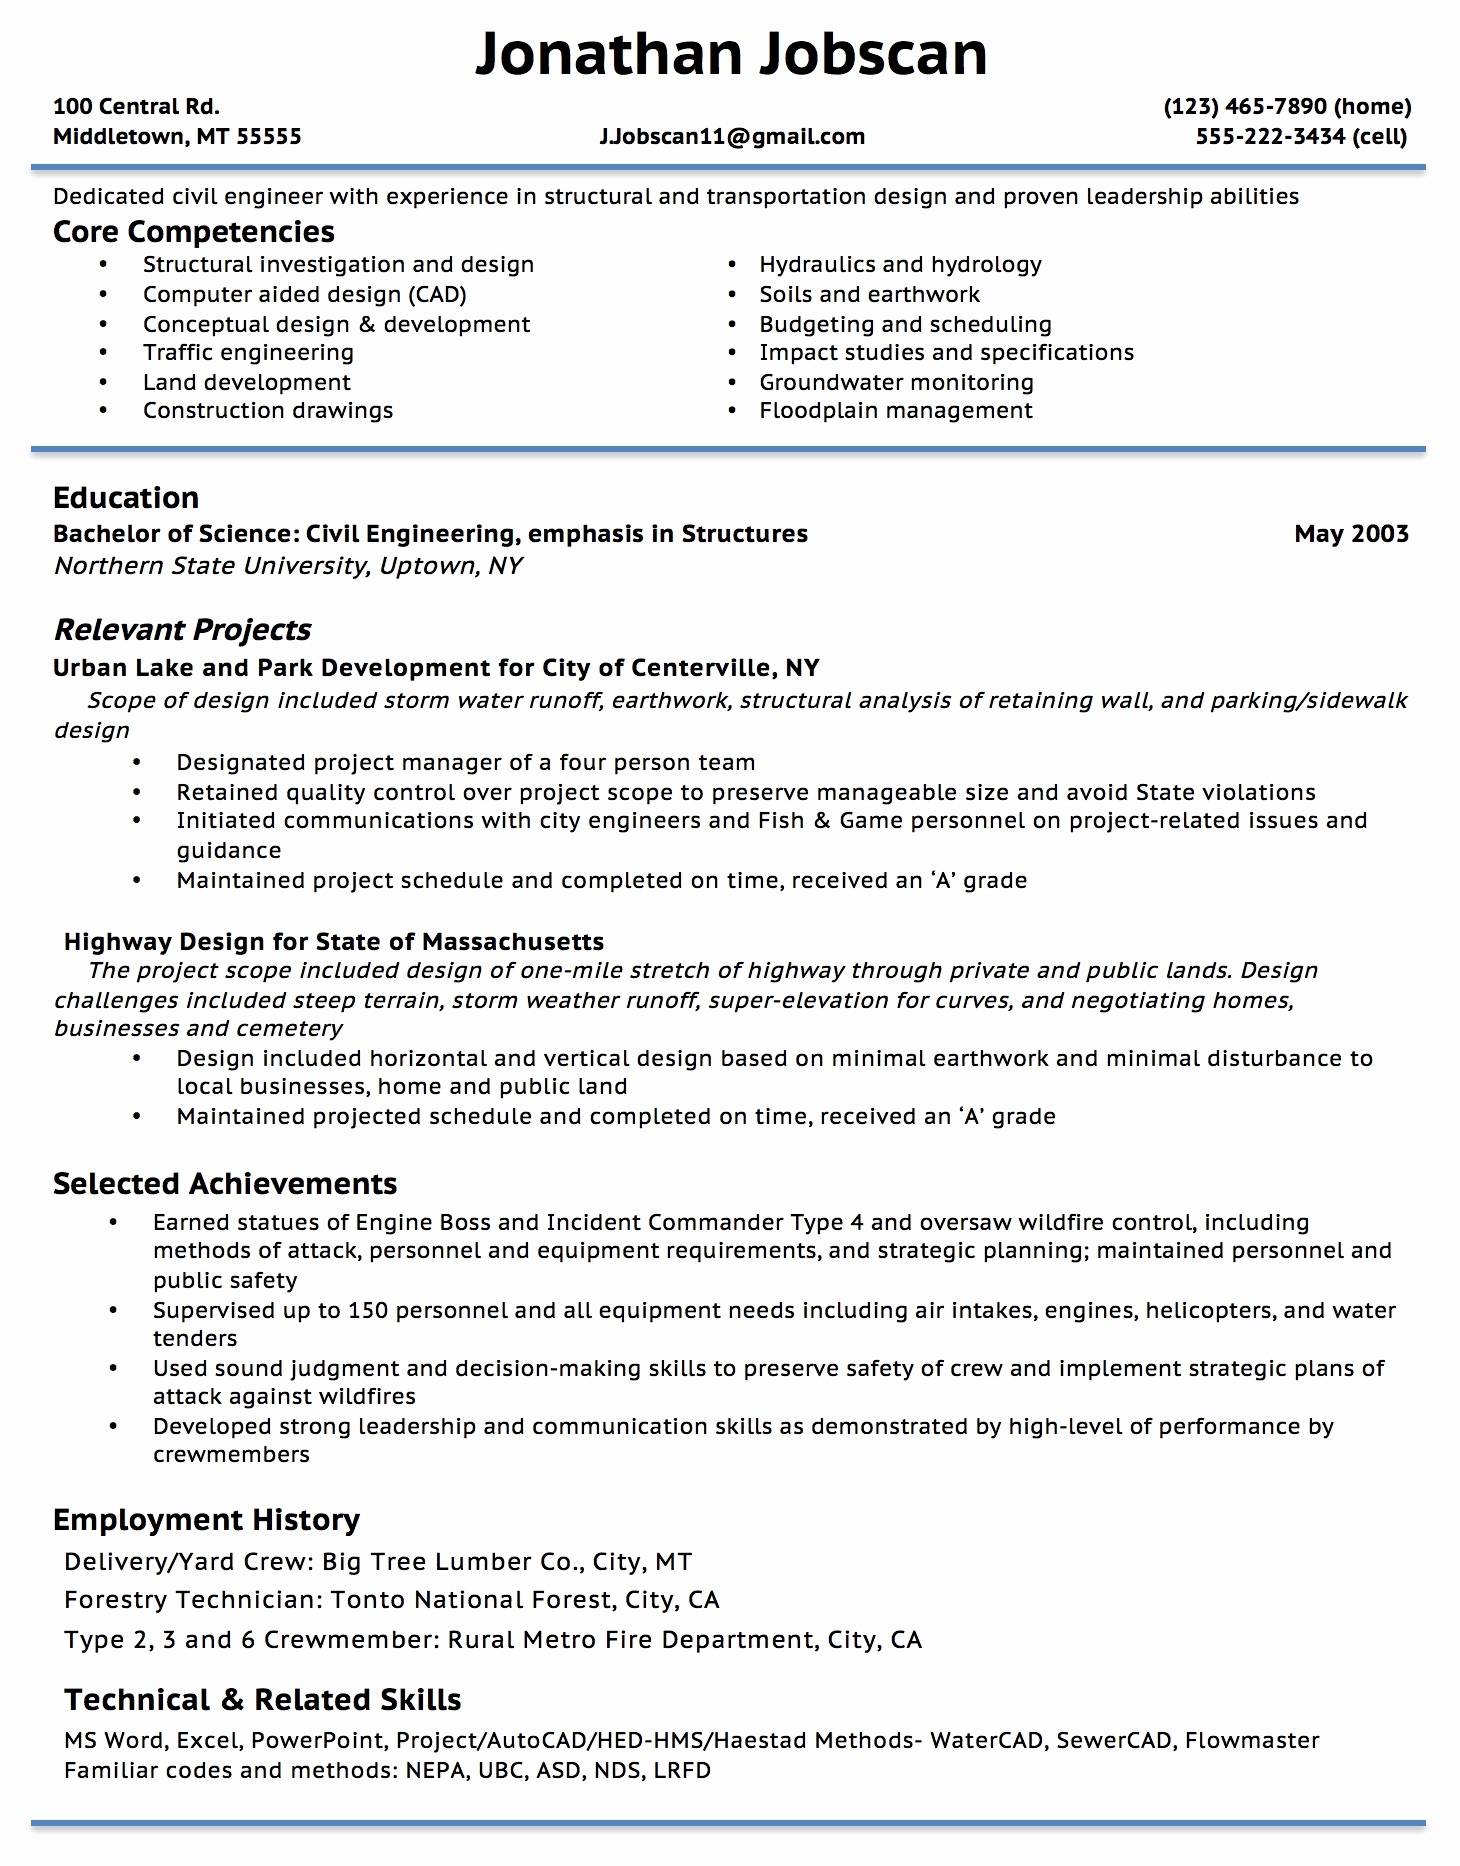 Cv Template Overleaf Resume Format